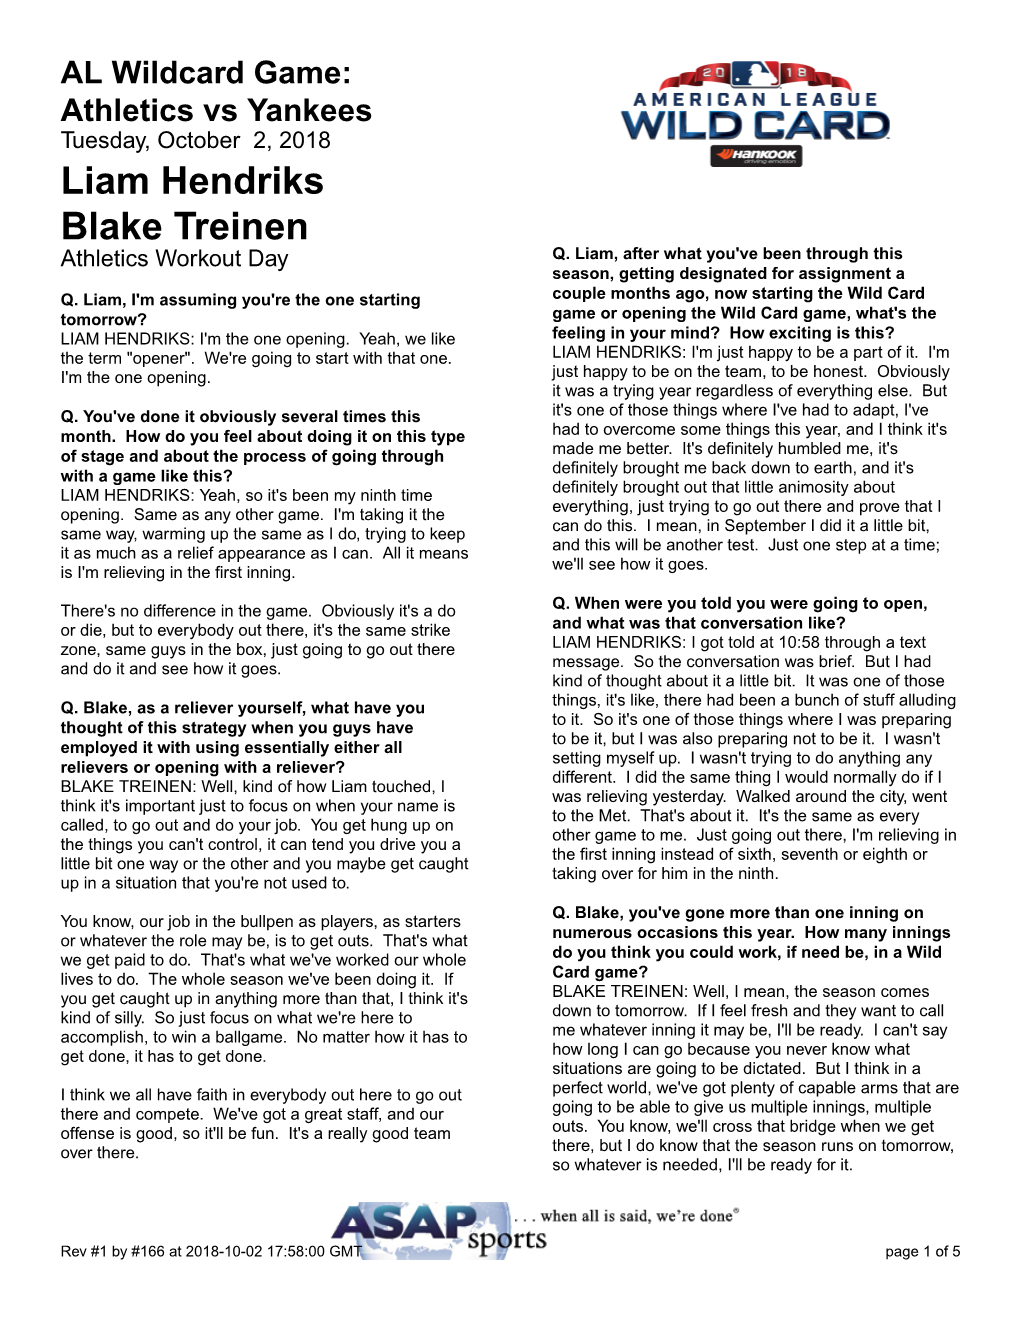 Liam Hendriks Blake Treinen Athletics Workout Day Q